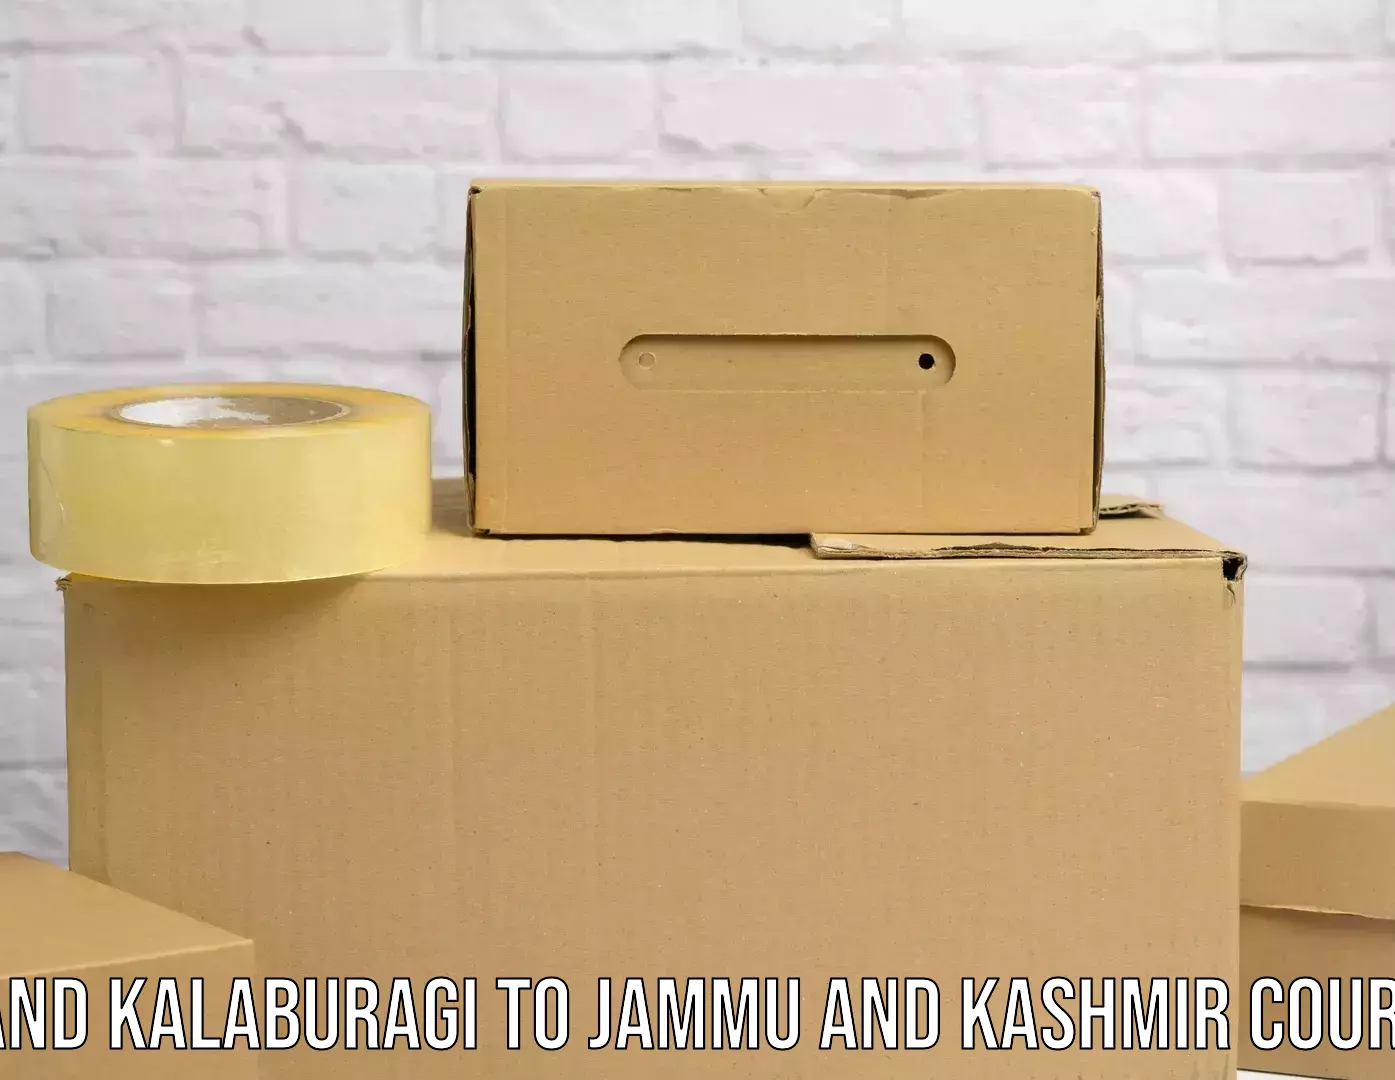 Logistics and distribution Aland Kalaburagi to Baramulla